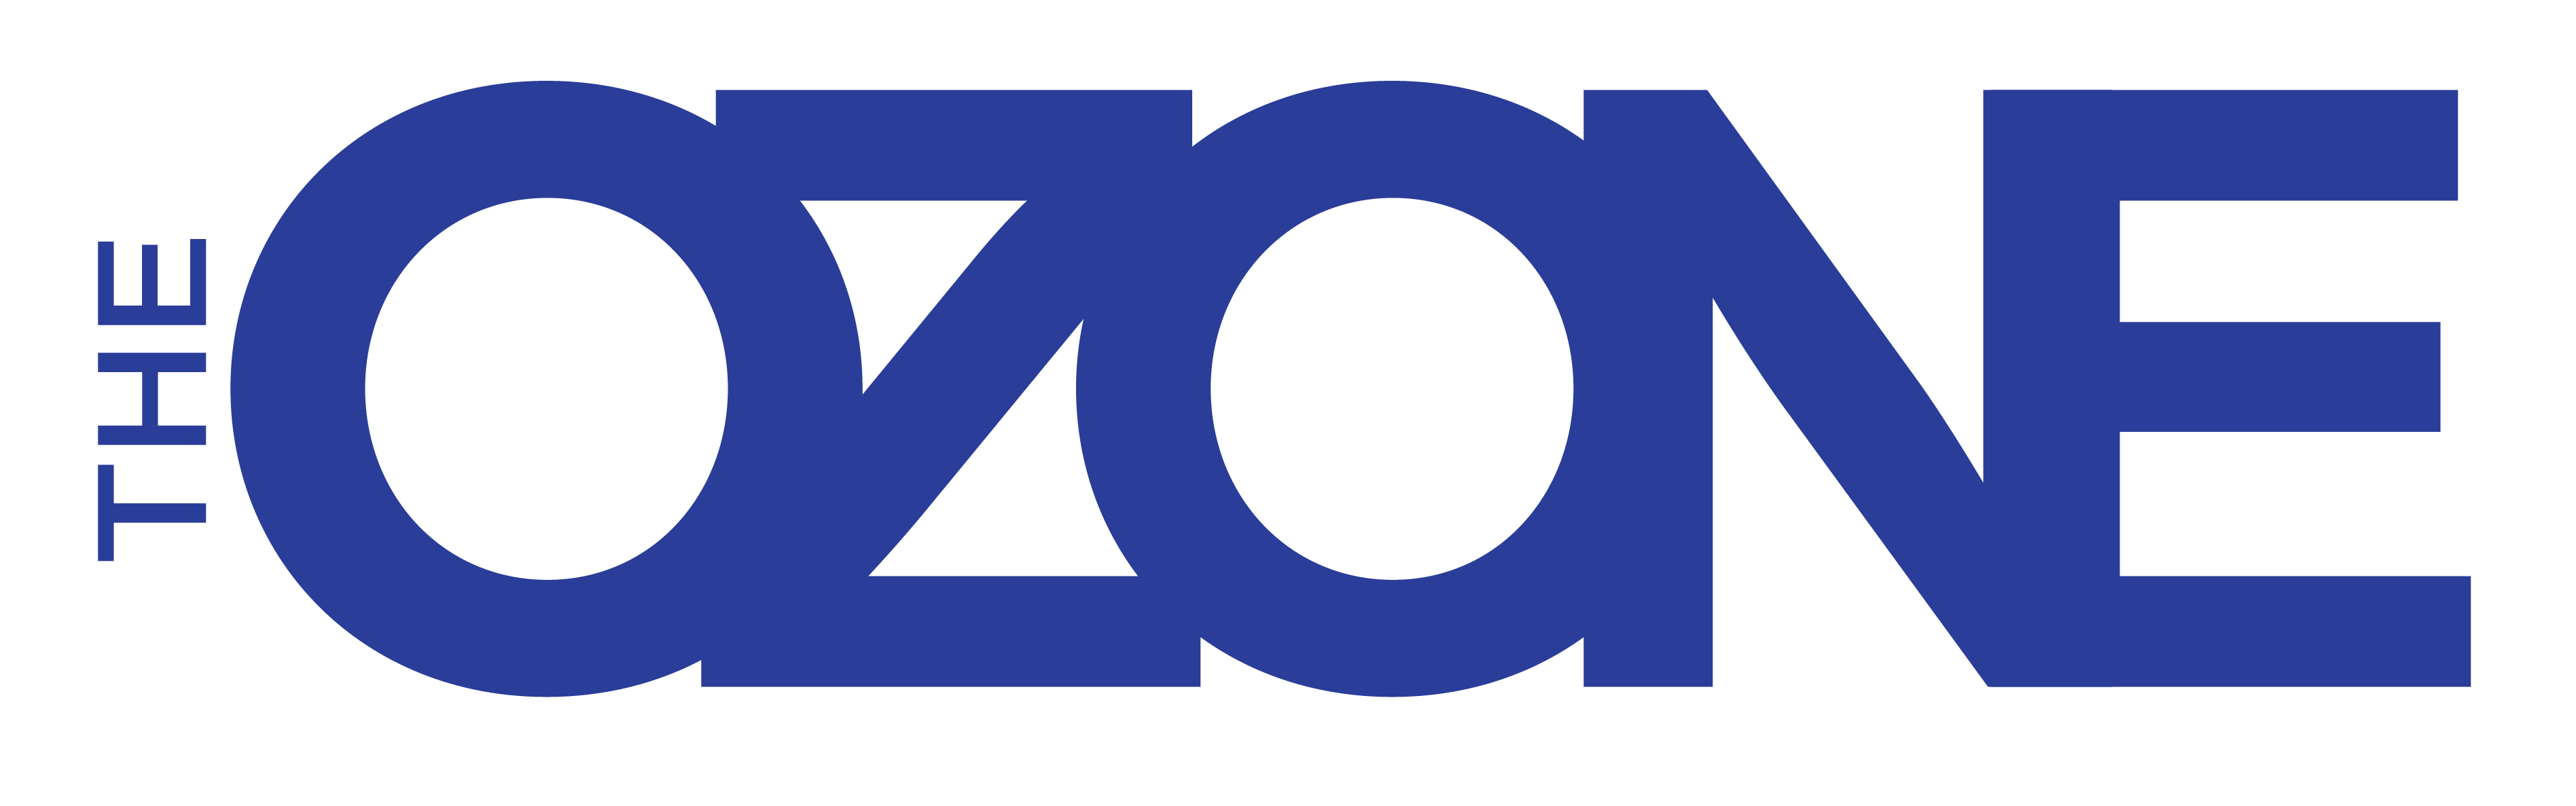 The Ozone Firm | LinkedIn